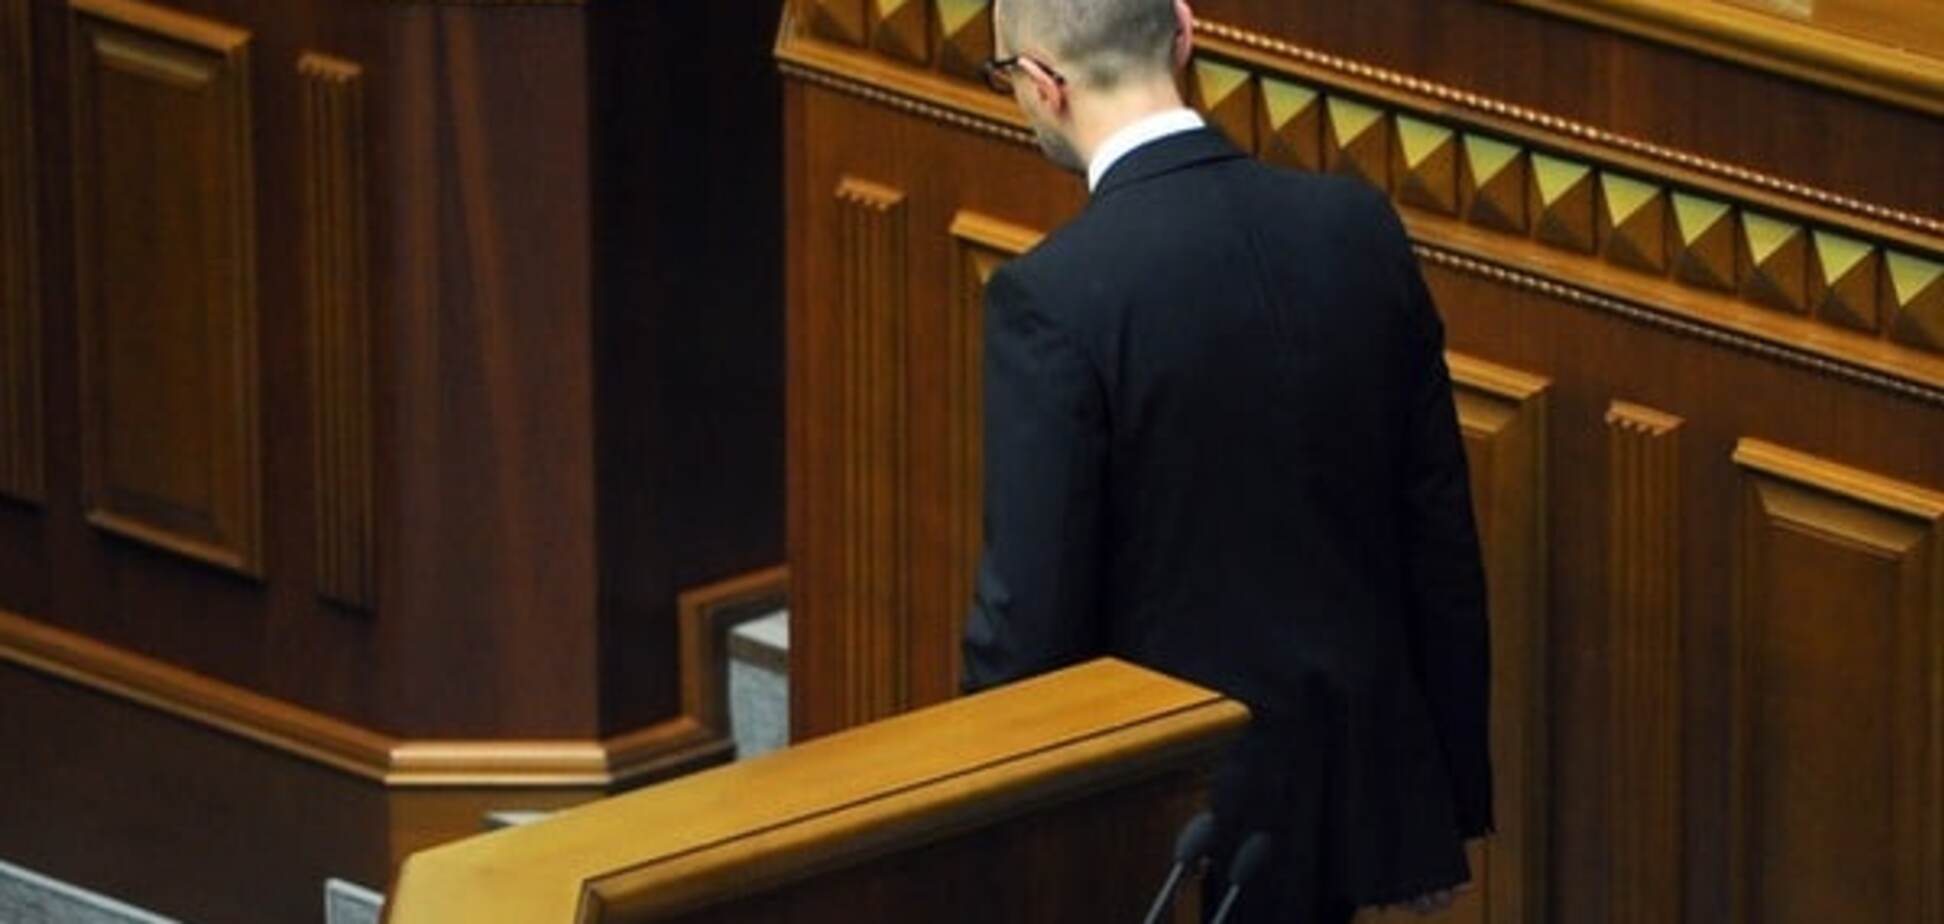 Порошенко залишив Яценюка прем'єром, щоб 'задушити в обіймах' - блогер